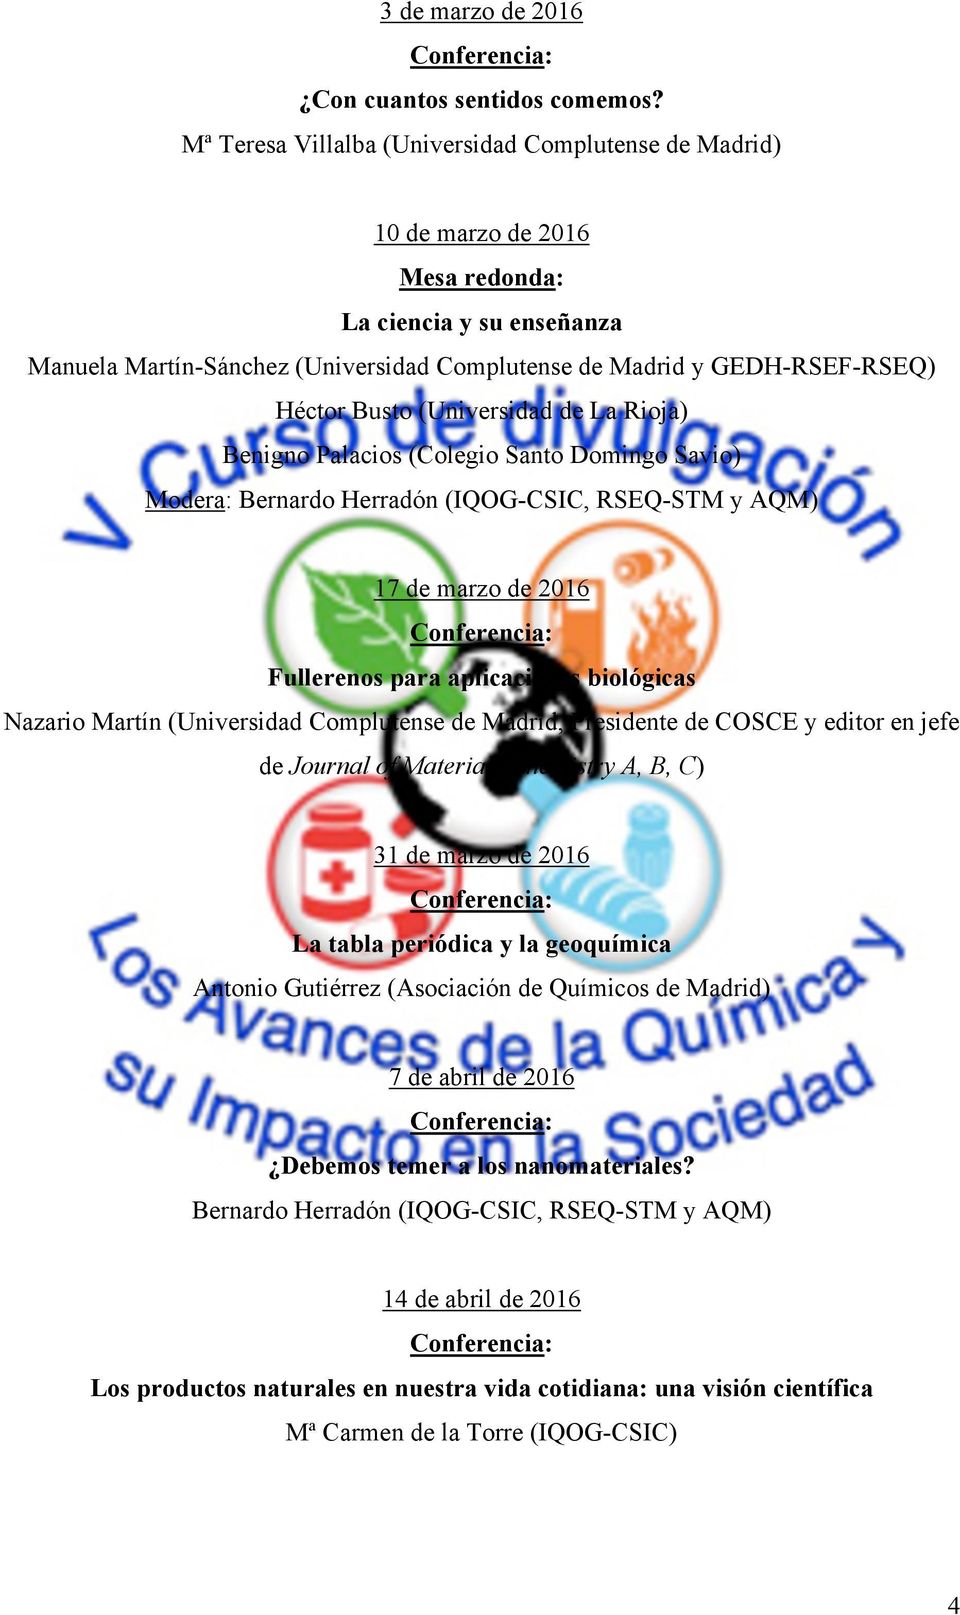 Busto (Universidad de La Rioja) Benigno Palacios (Colegio Santo Domingo Savio) Modera: Bernardo Herradón (IQOG-CSIC, RSEQ-STM y AQM) 17 de marzo de 2016 Fullerenos para aplicaciones biológicas